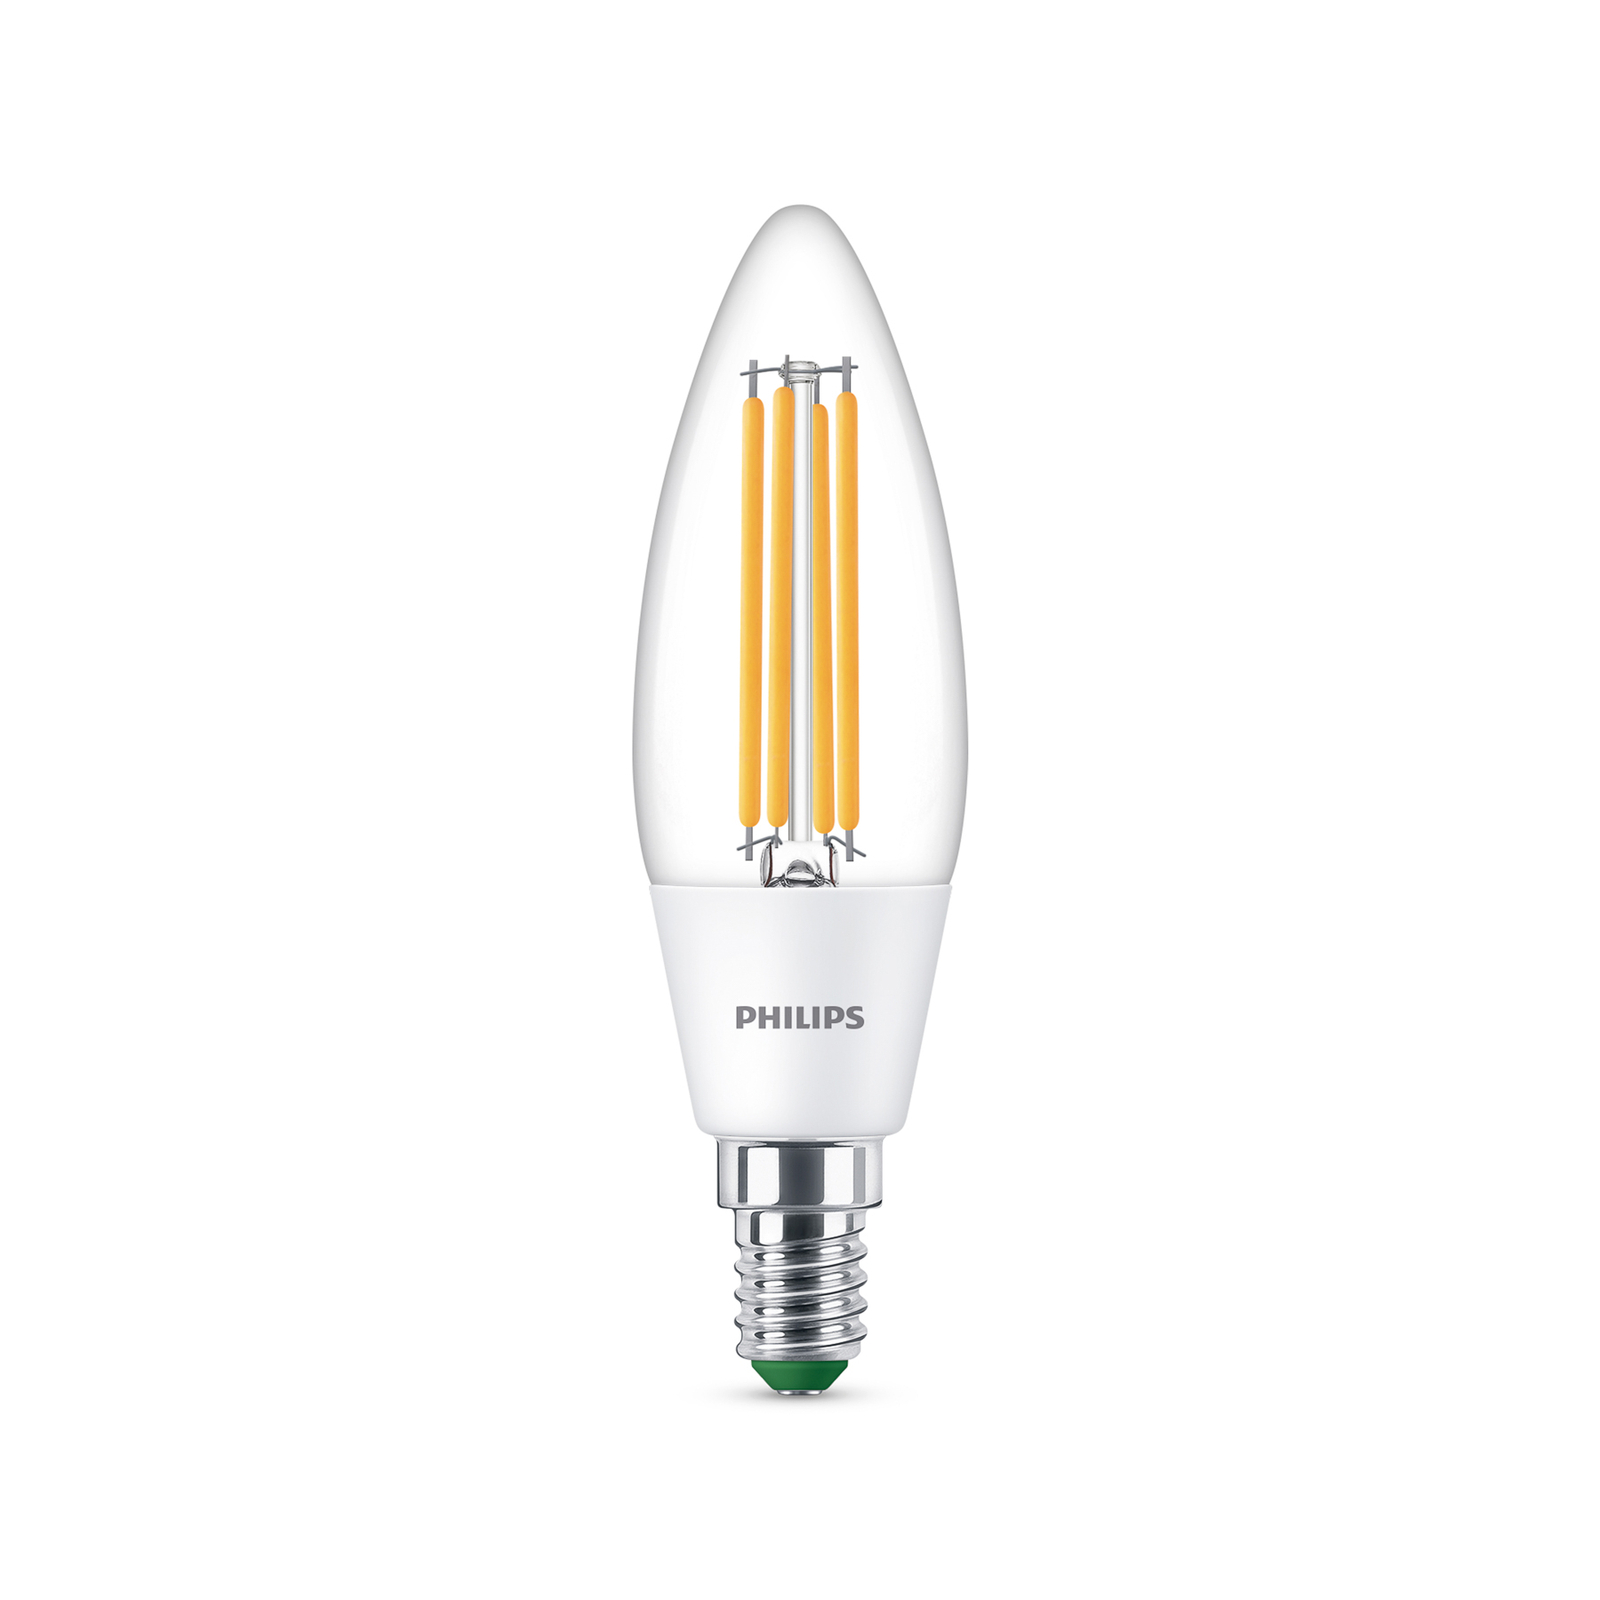 Philips LED-Kerzenlampe E14 2,3W 485lm klar 4.000K